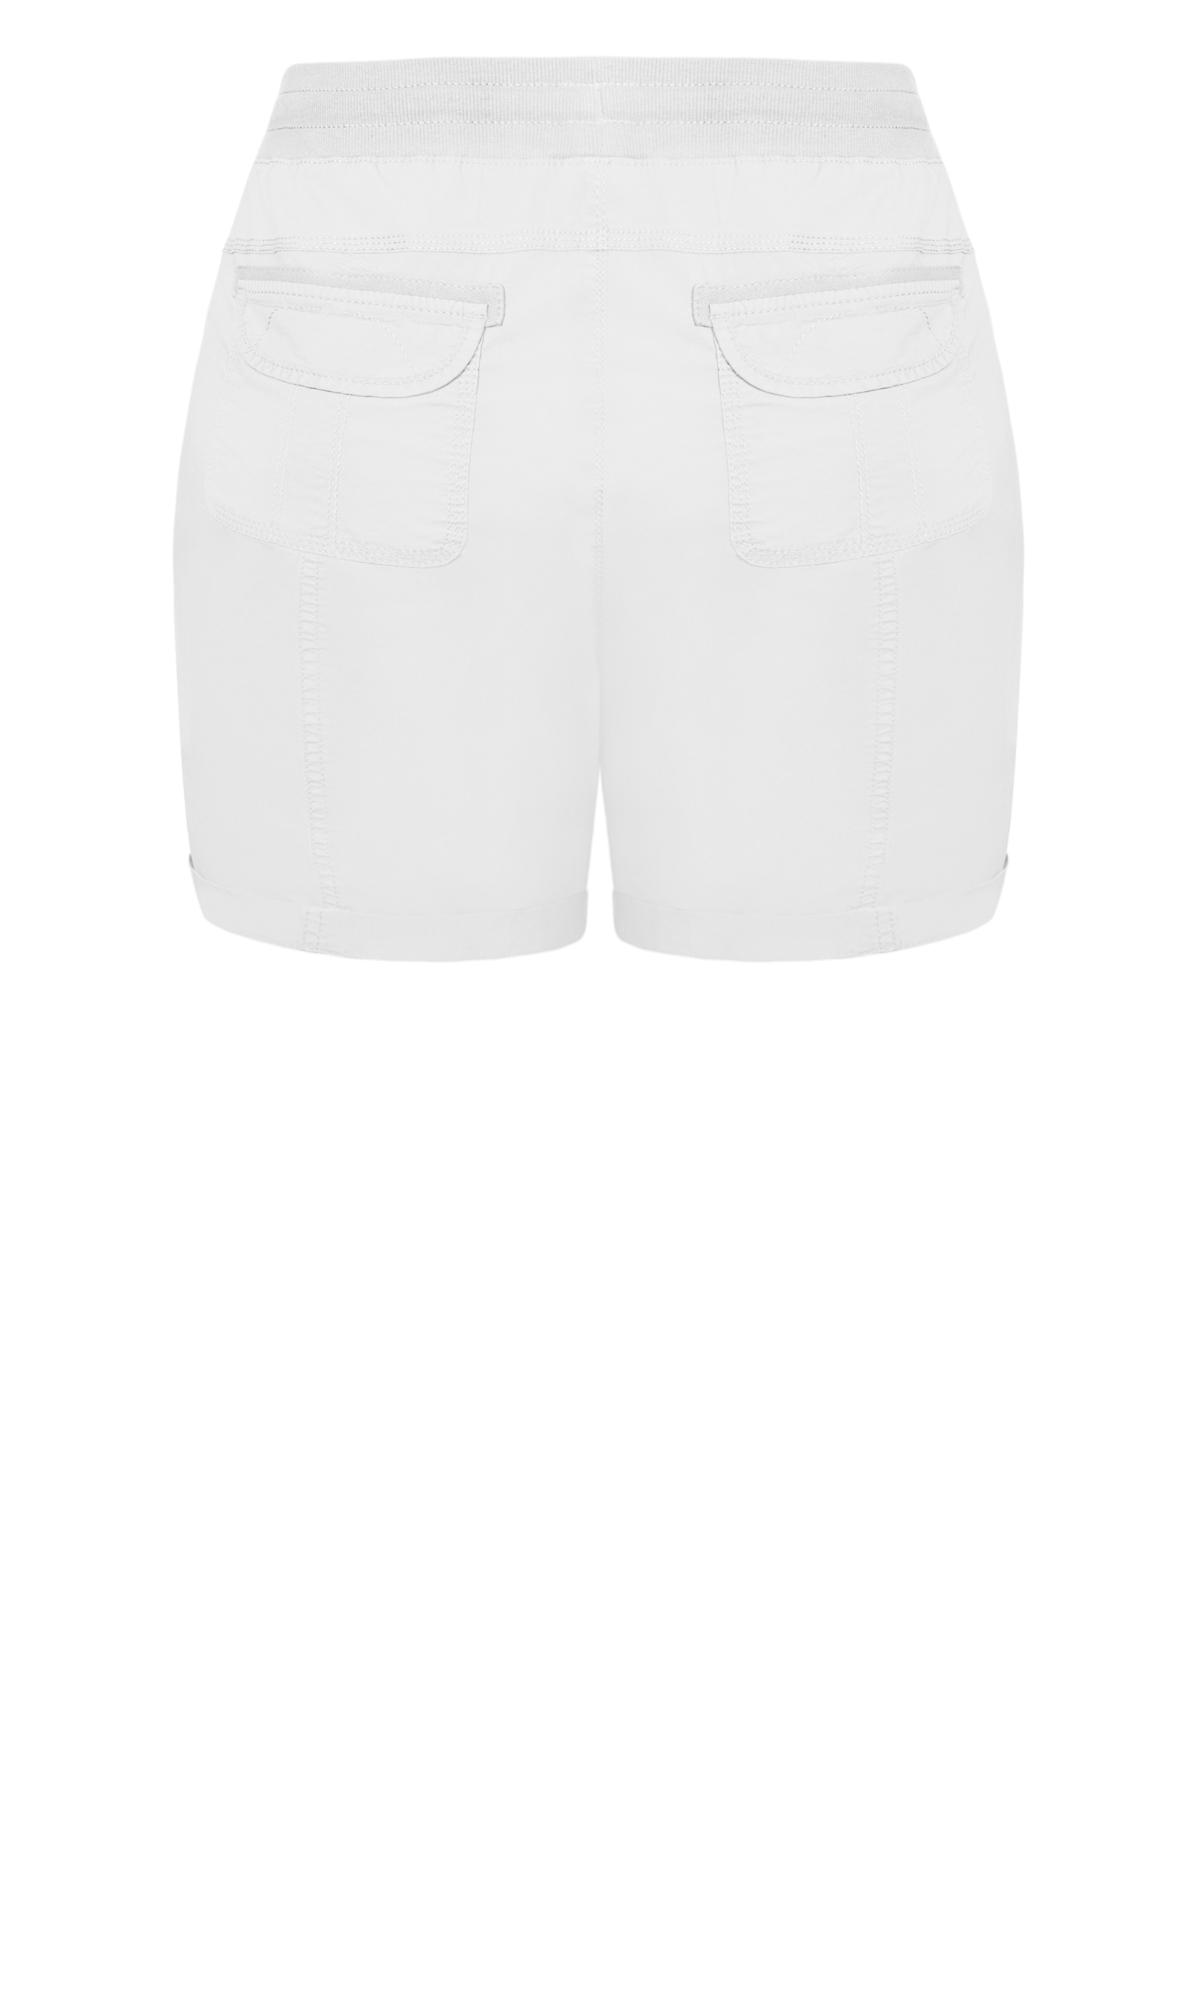 Evans White Cotton Casual Short 3